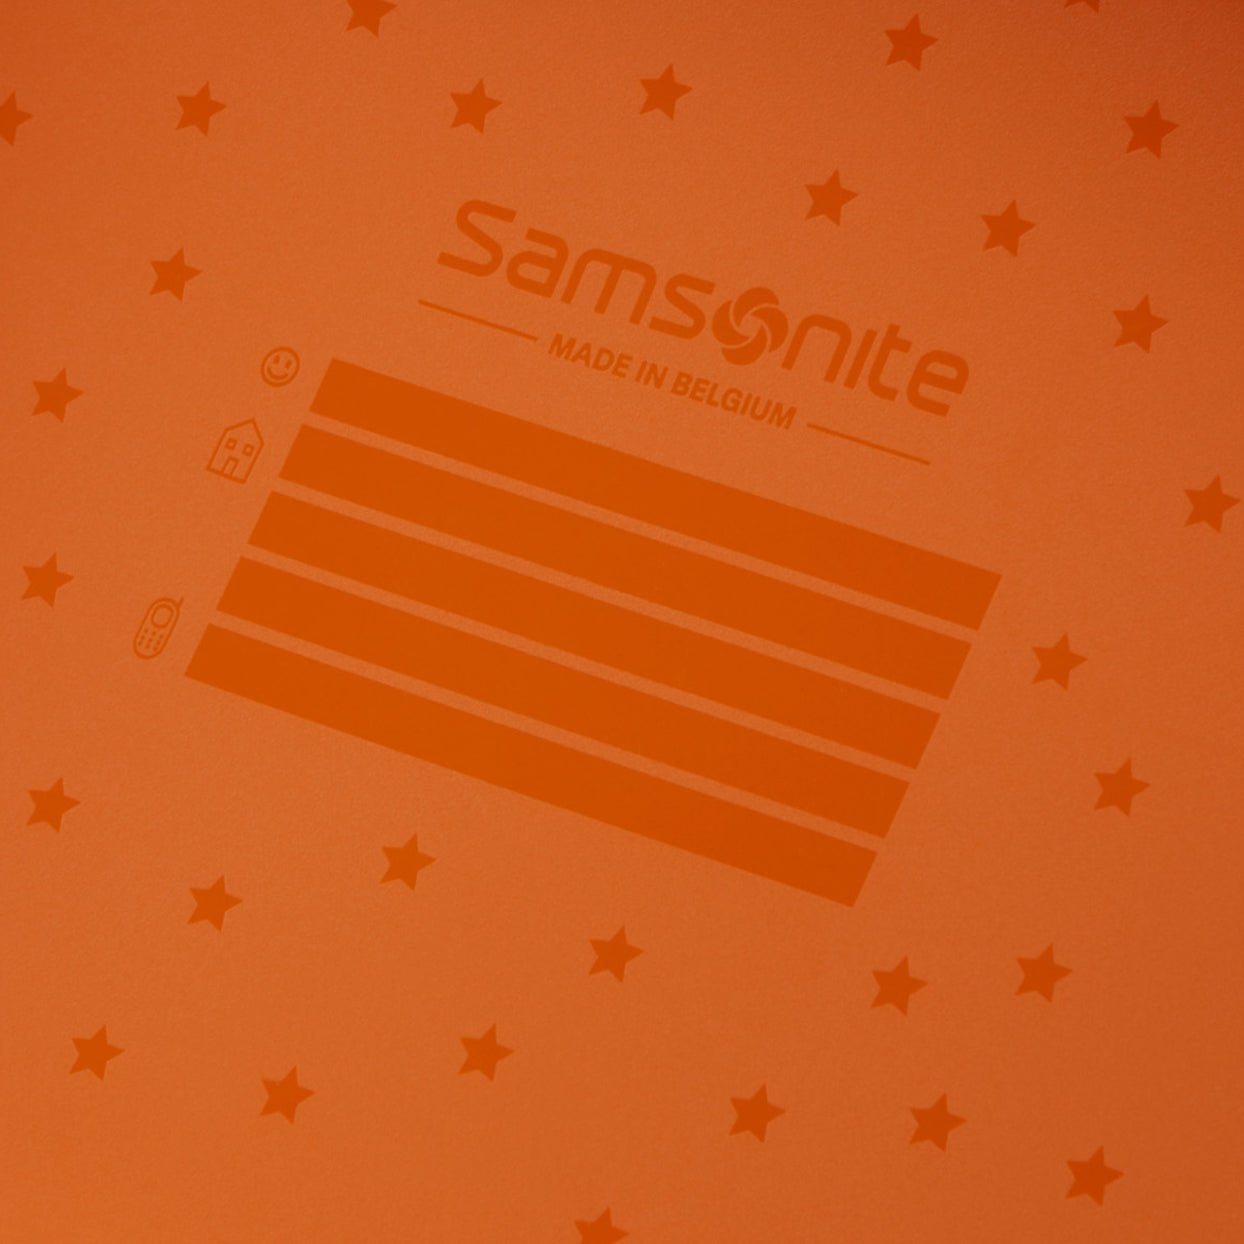 Samsonite Dream2Go Ride-On Suitcase 52 cm - School Bus